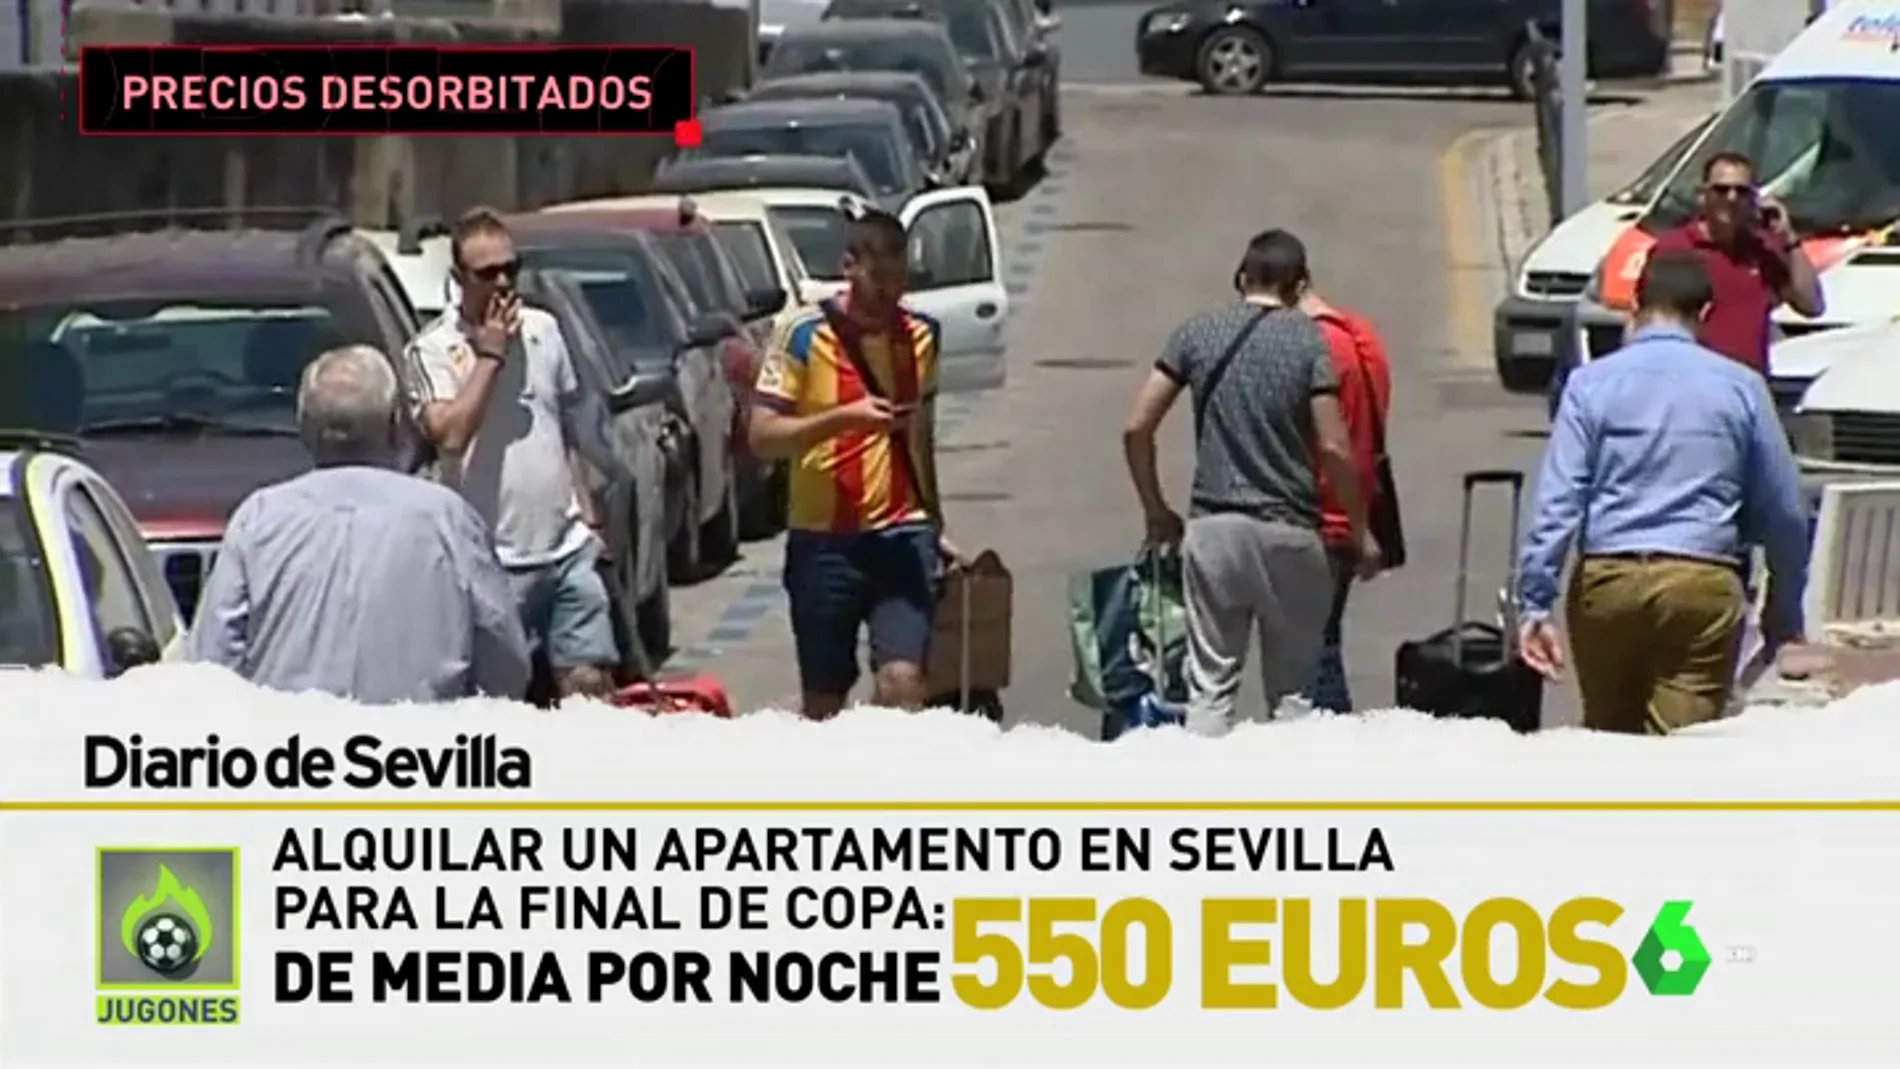 Los alquileres en Sevilla se disparan por la final de la Copa: ¡550 euros de media por noche! 